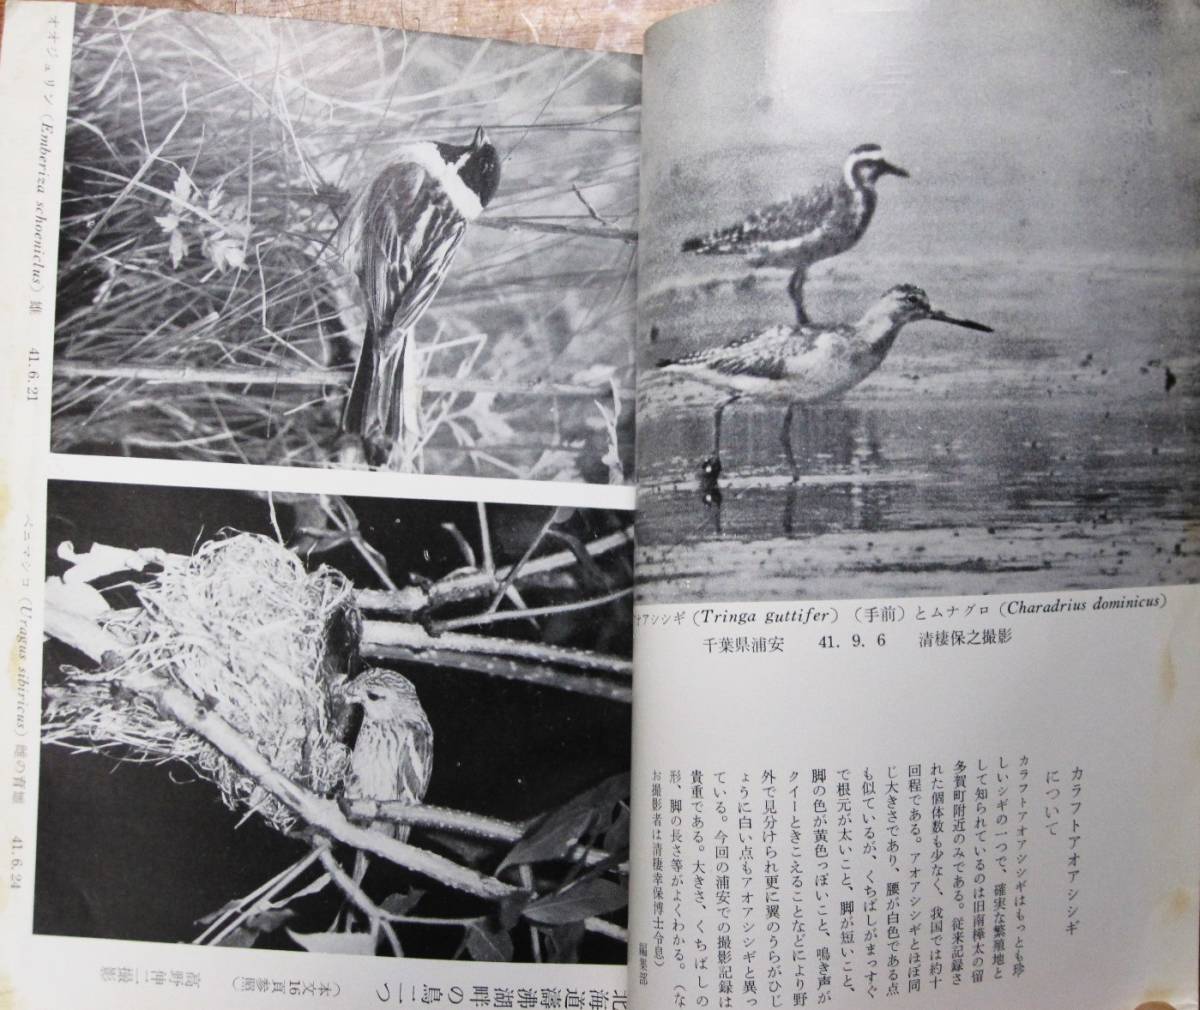 . журнал / дикая птица /1967 год 1-8 месяц 11 месяц /9 шт. # Япония дикая птица. .